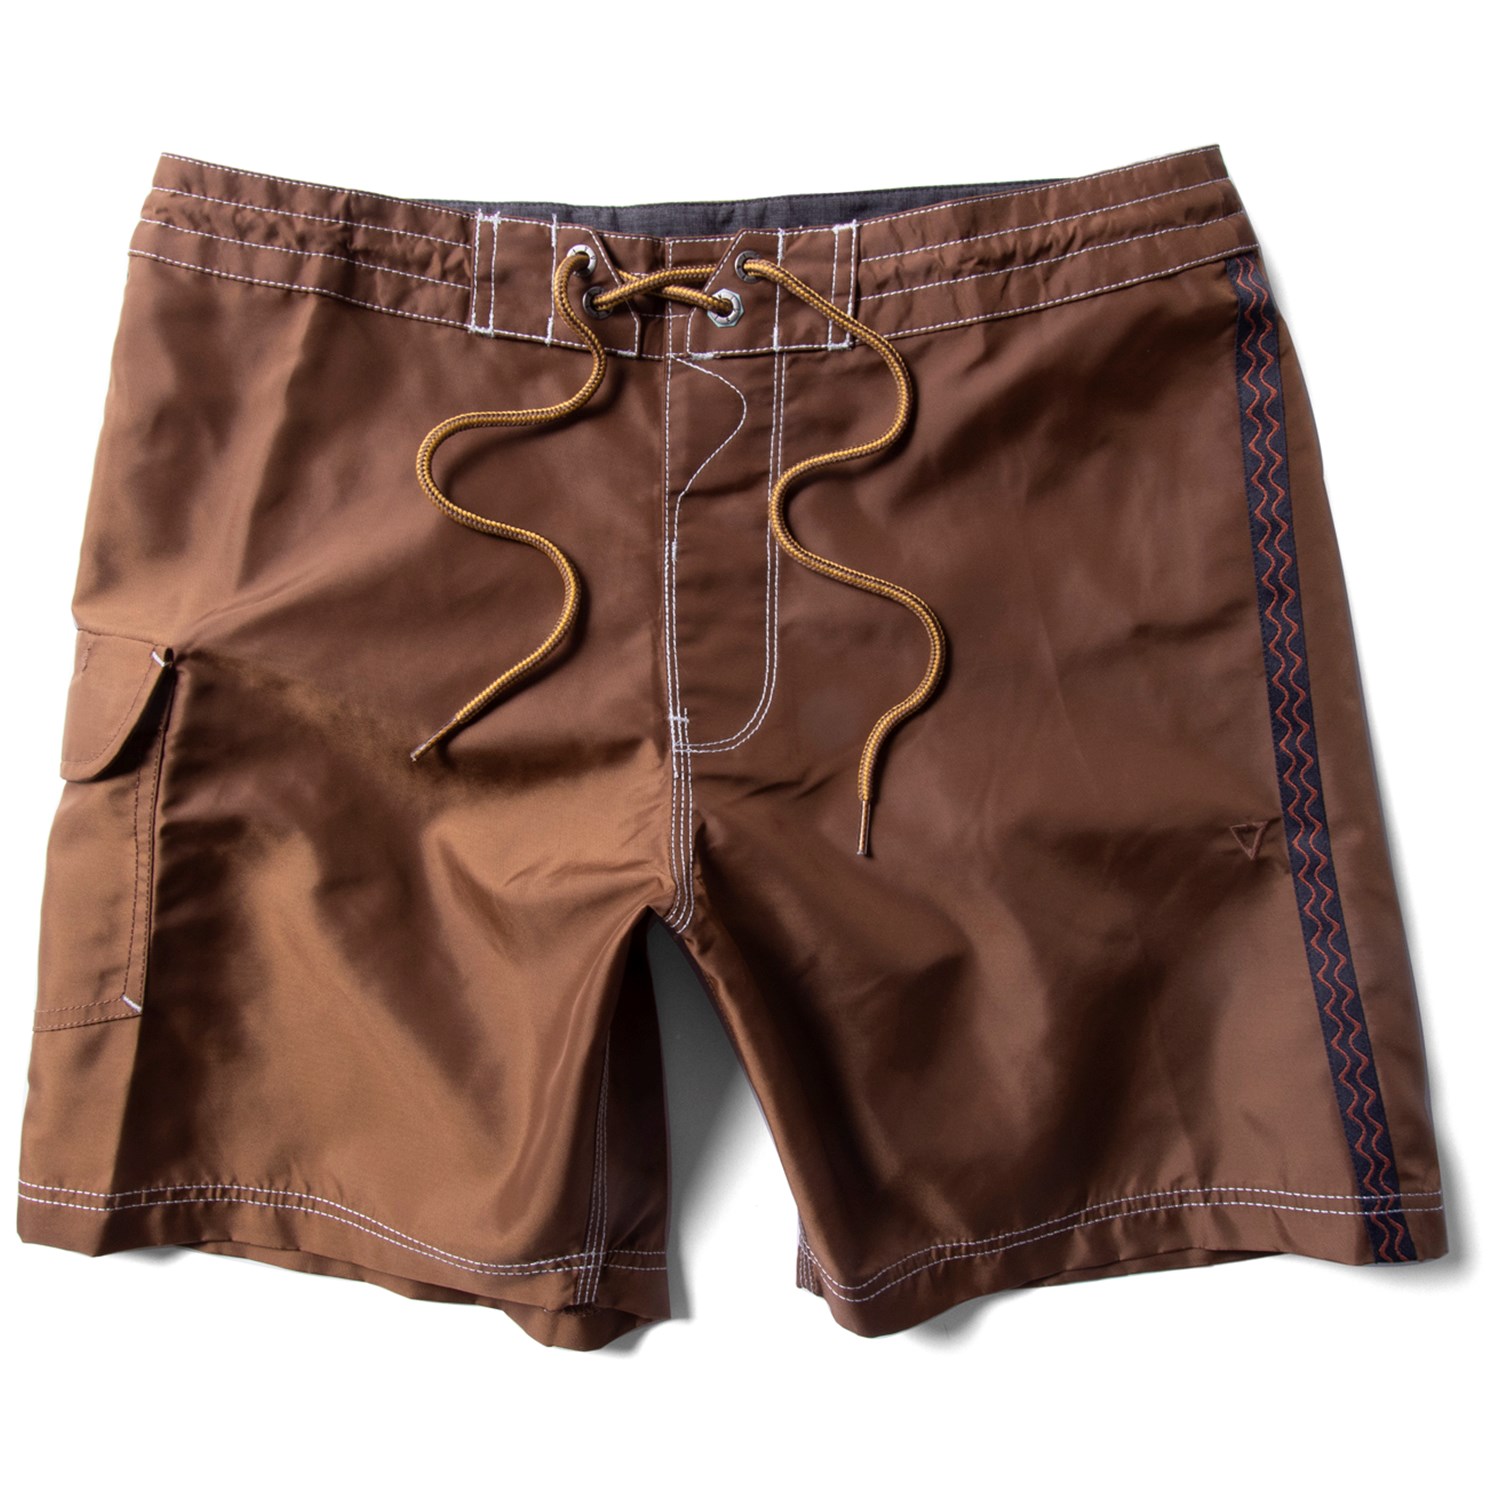 Шорты Vissla Undefined Lines 16.5 Boardshorts, цвет Chocolate знак с сезон одеж оденься по погоде мальчики